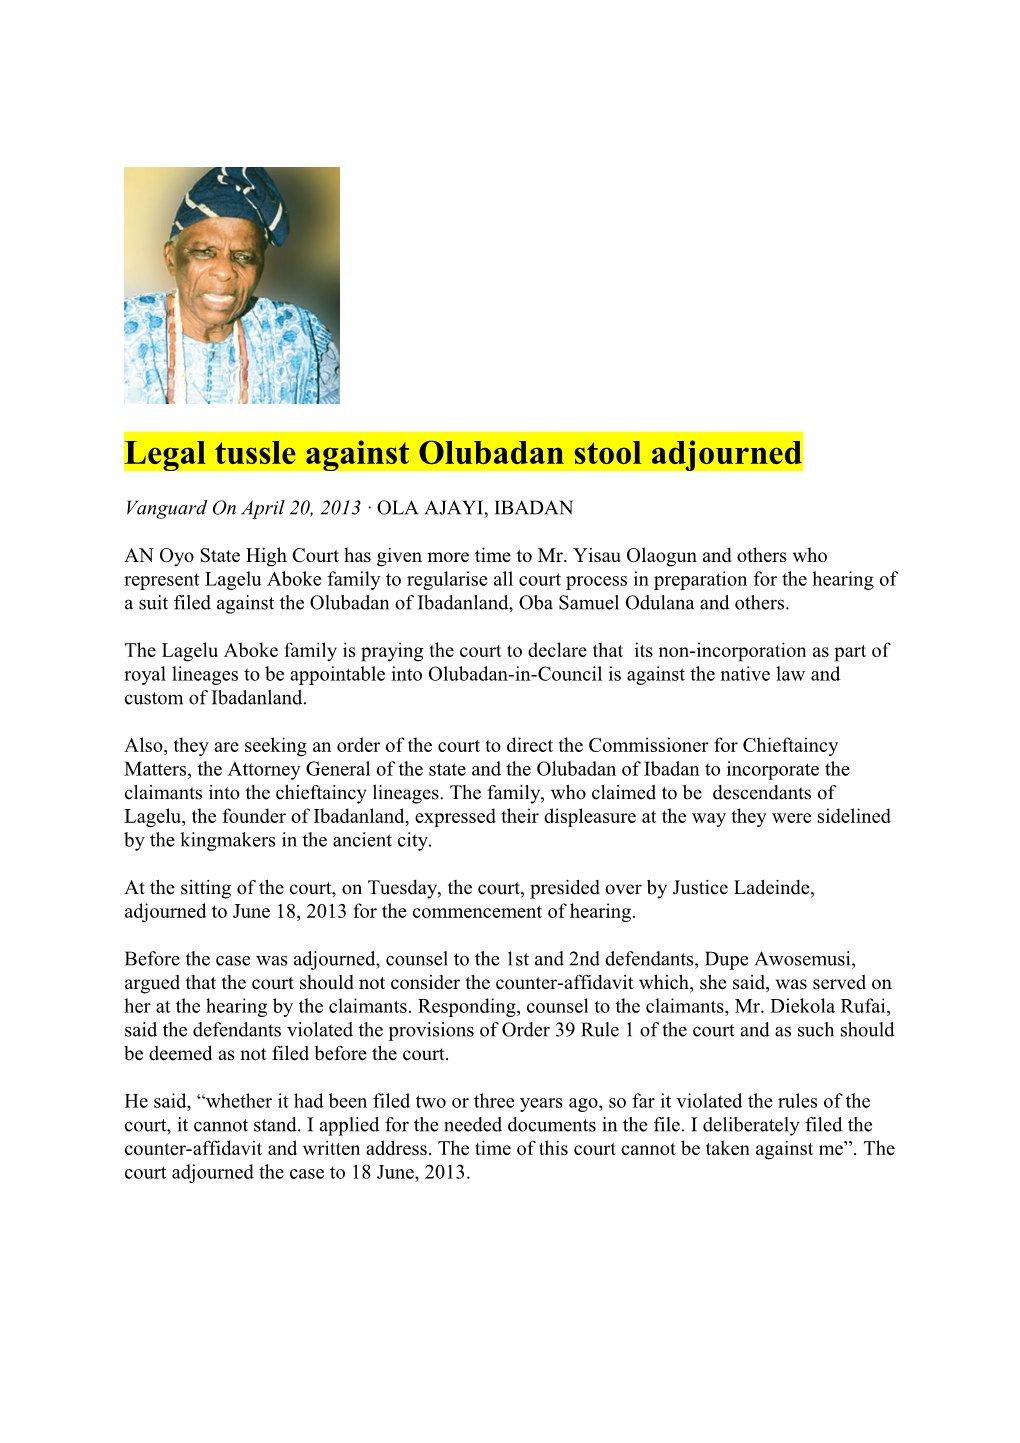 Legal Tussle Against Olubadan Stool Adjourned